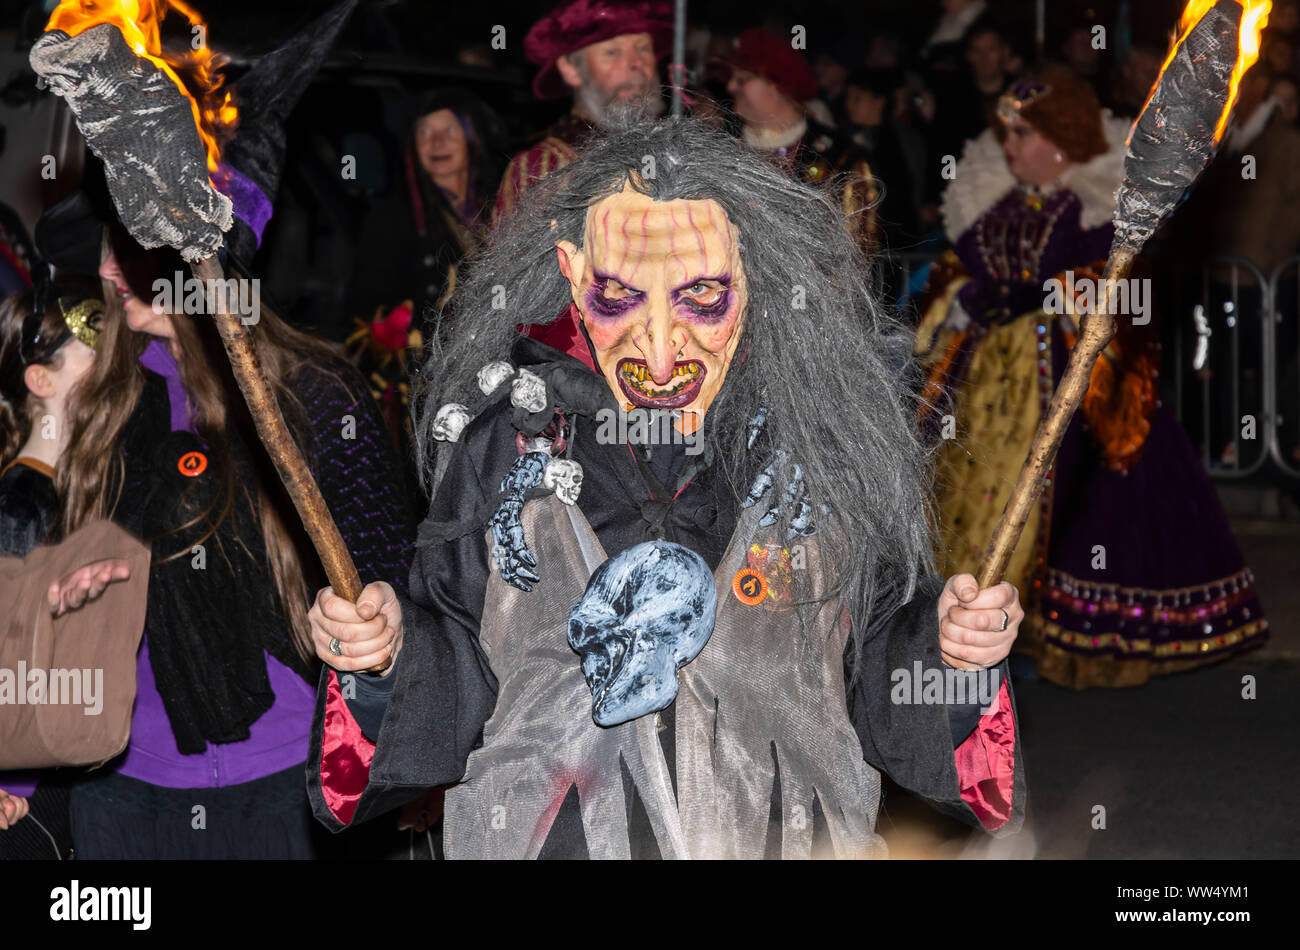 Jemand in Kostüm gekleidet, wie eine Hexe in einer Prozession während an einem Guy Fawkes Veranstaltung in England, Großbritannien. Stockfoto